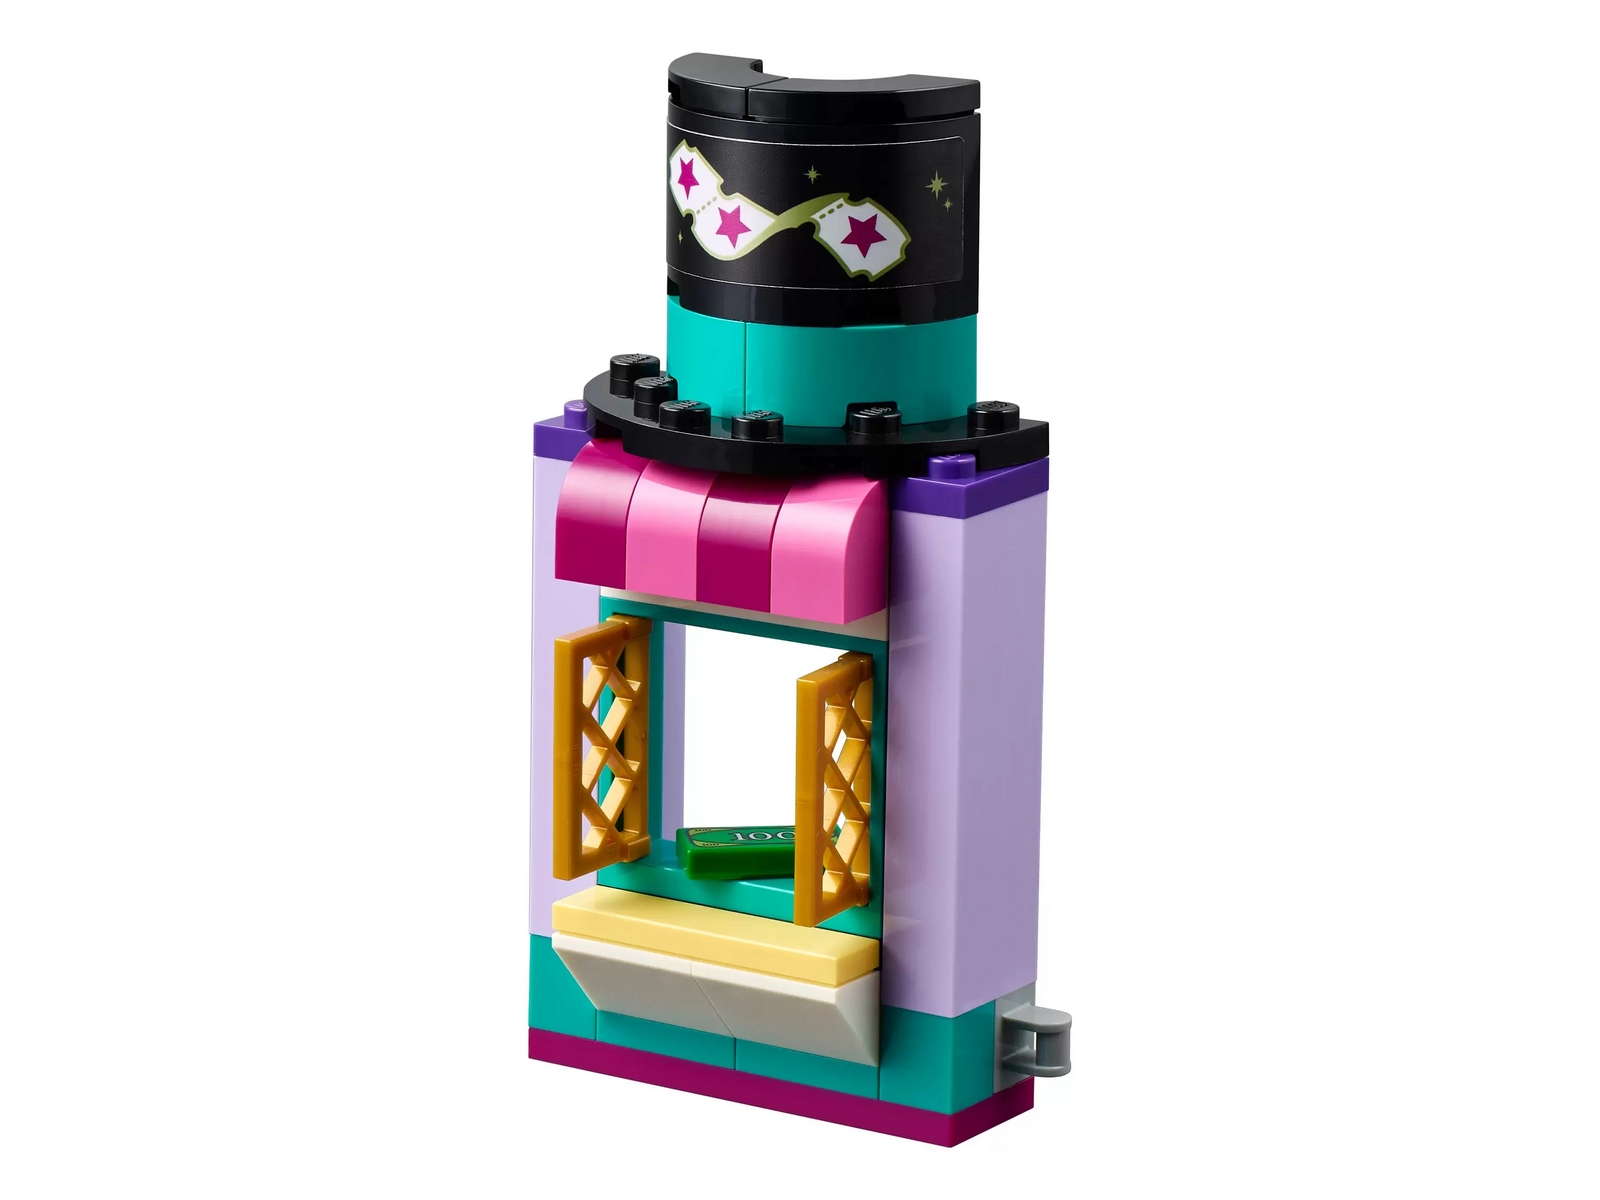 Конструктор LEGO Friends «Киоск на волшебной ярмарке» 41687 / 361 деталей